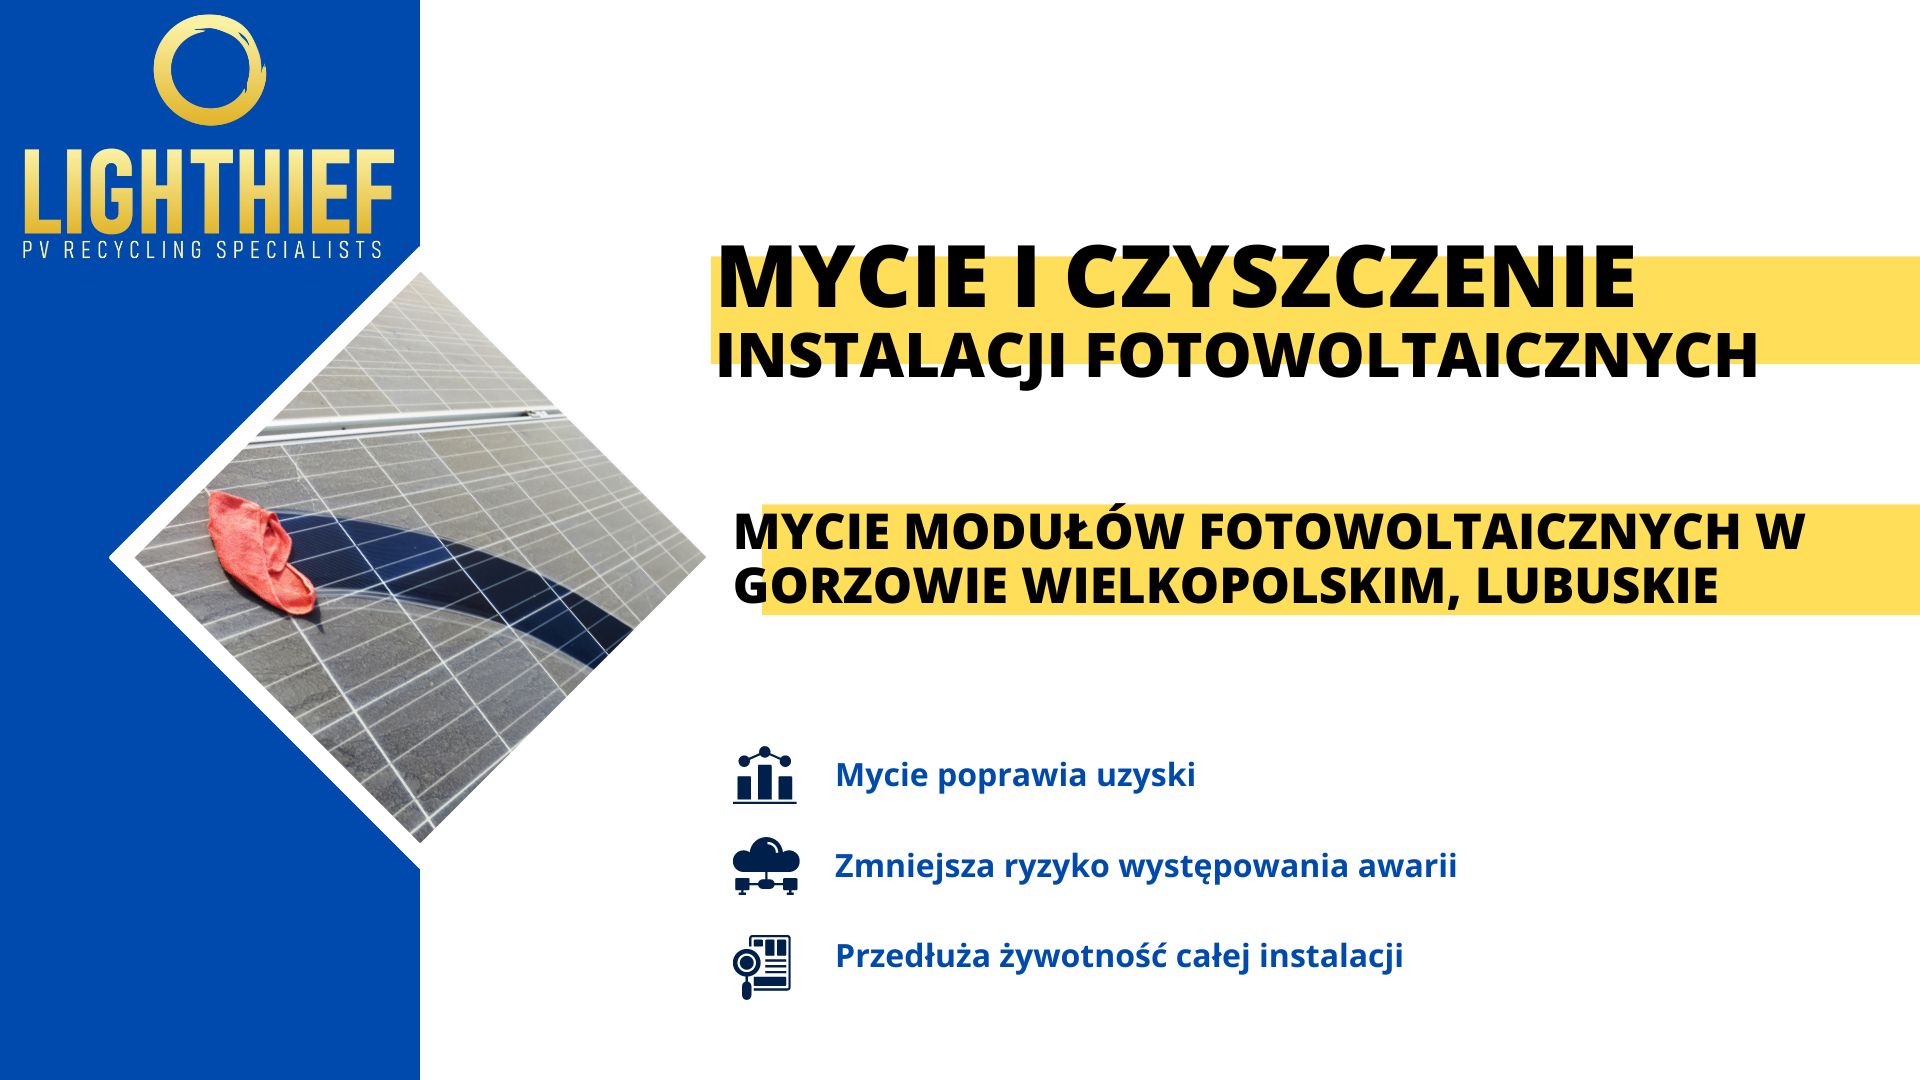 Mycie modułów fotowoltaicznych w Gorzowie Wielkopolskim